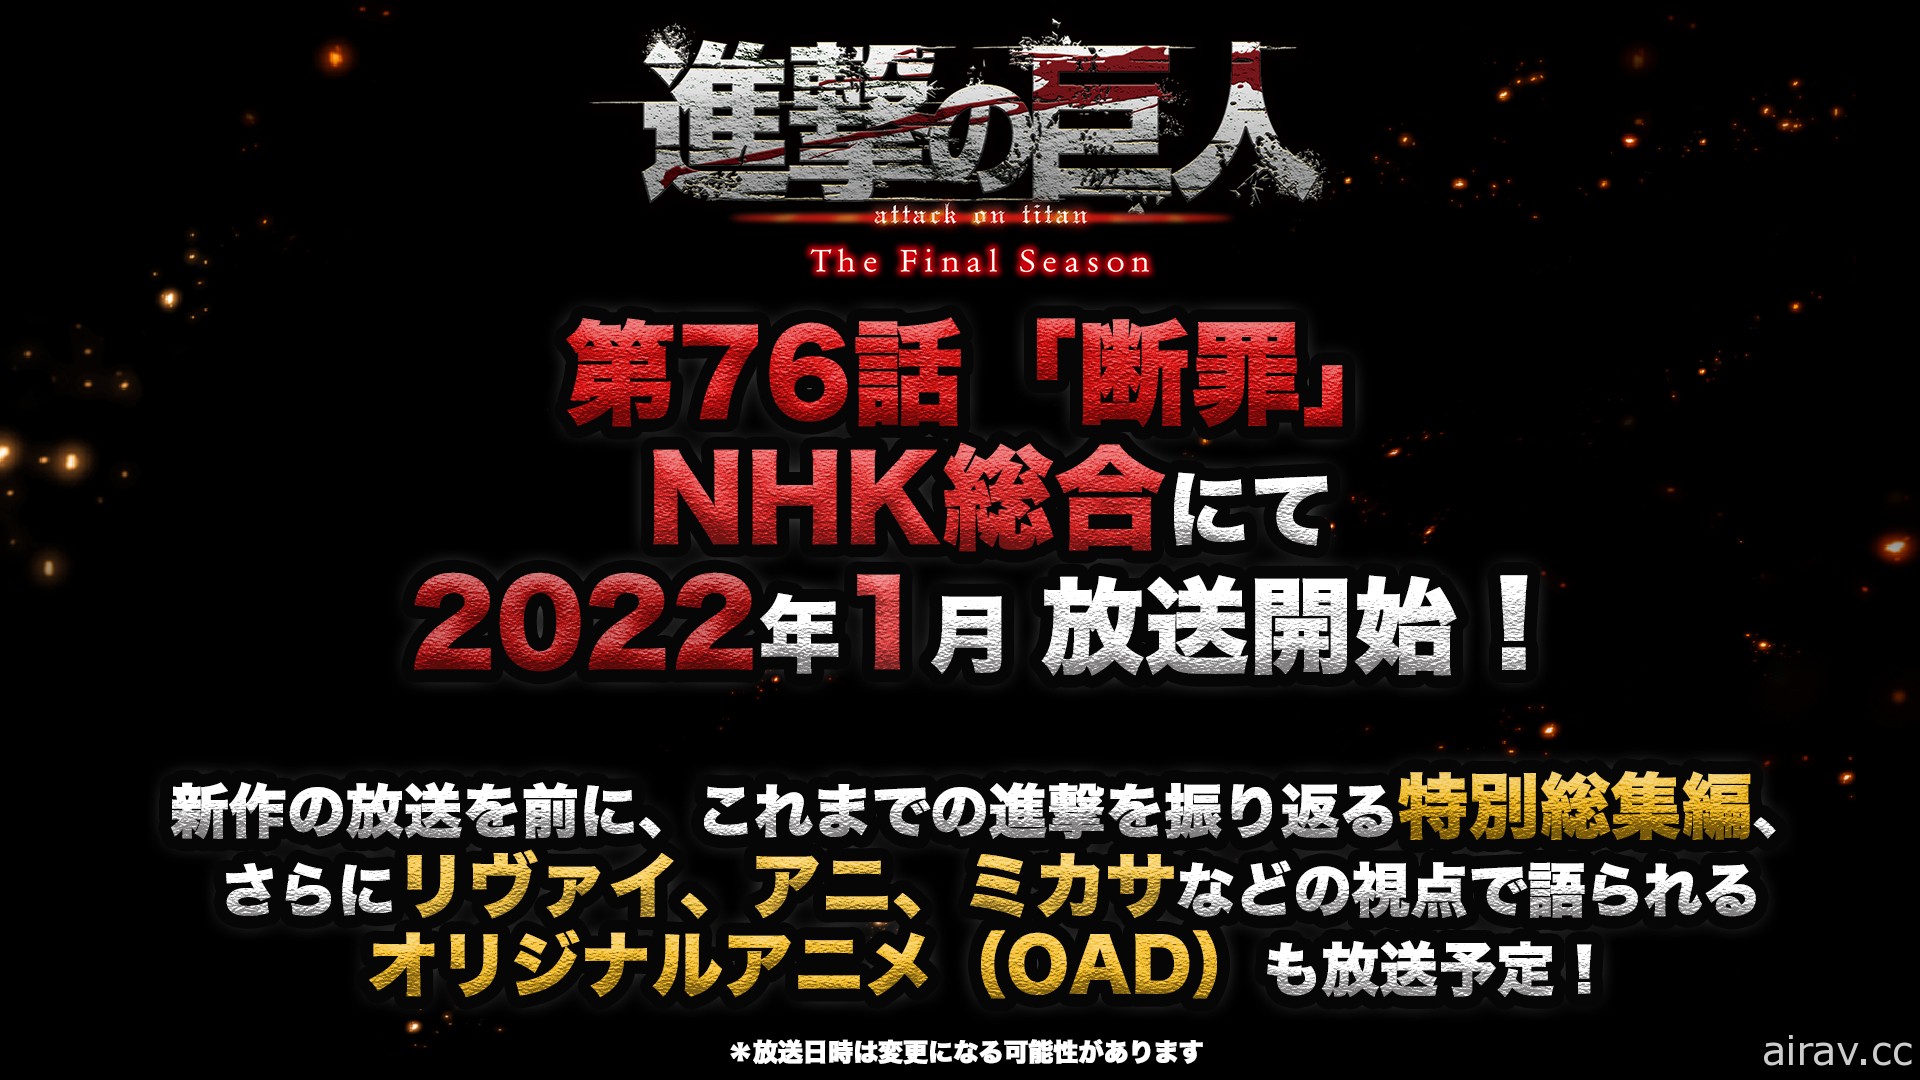 《進擊的巨人 The Final Season Part 2》宣布 2022 年 1 月正式開播